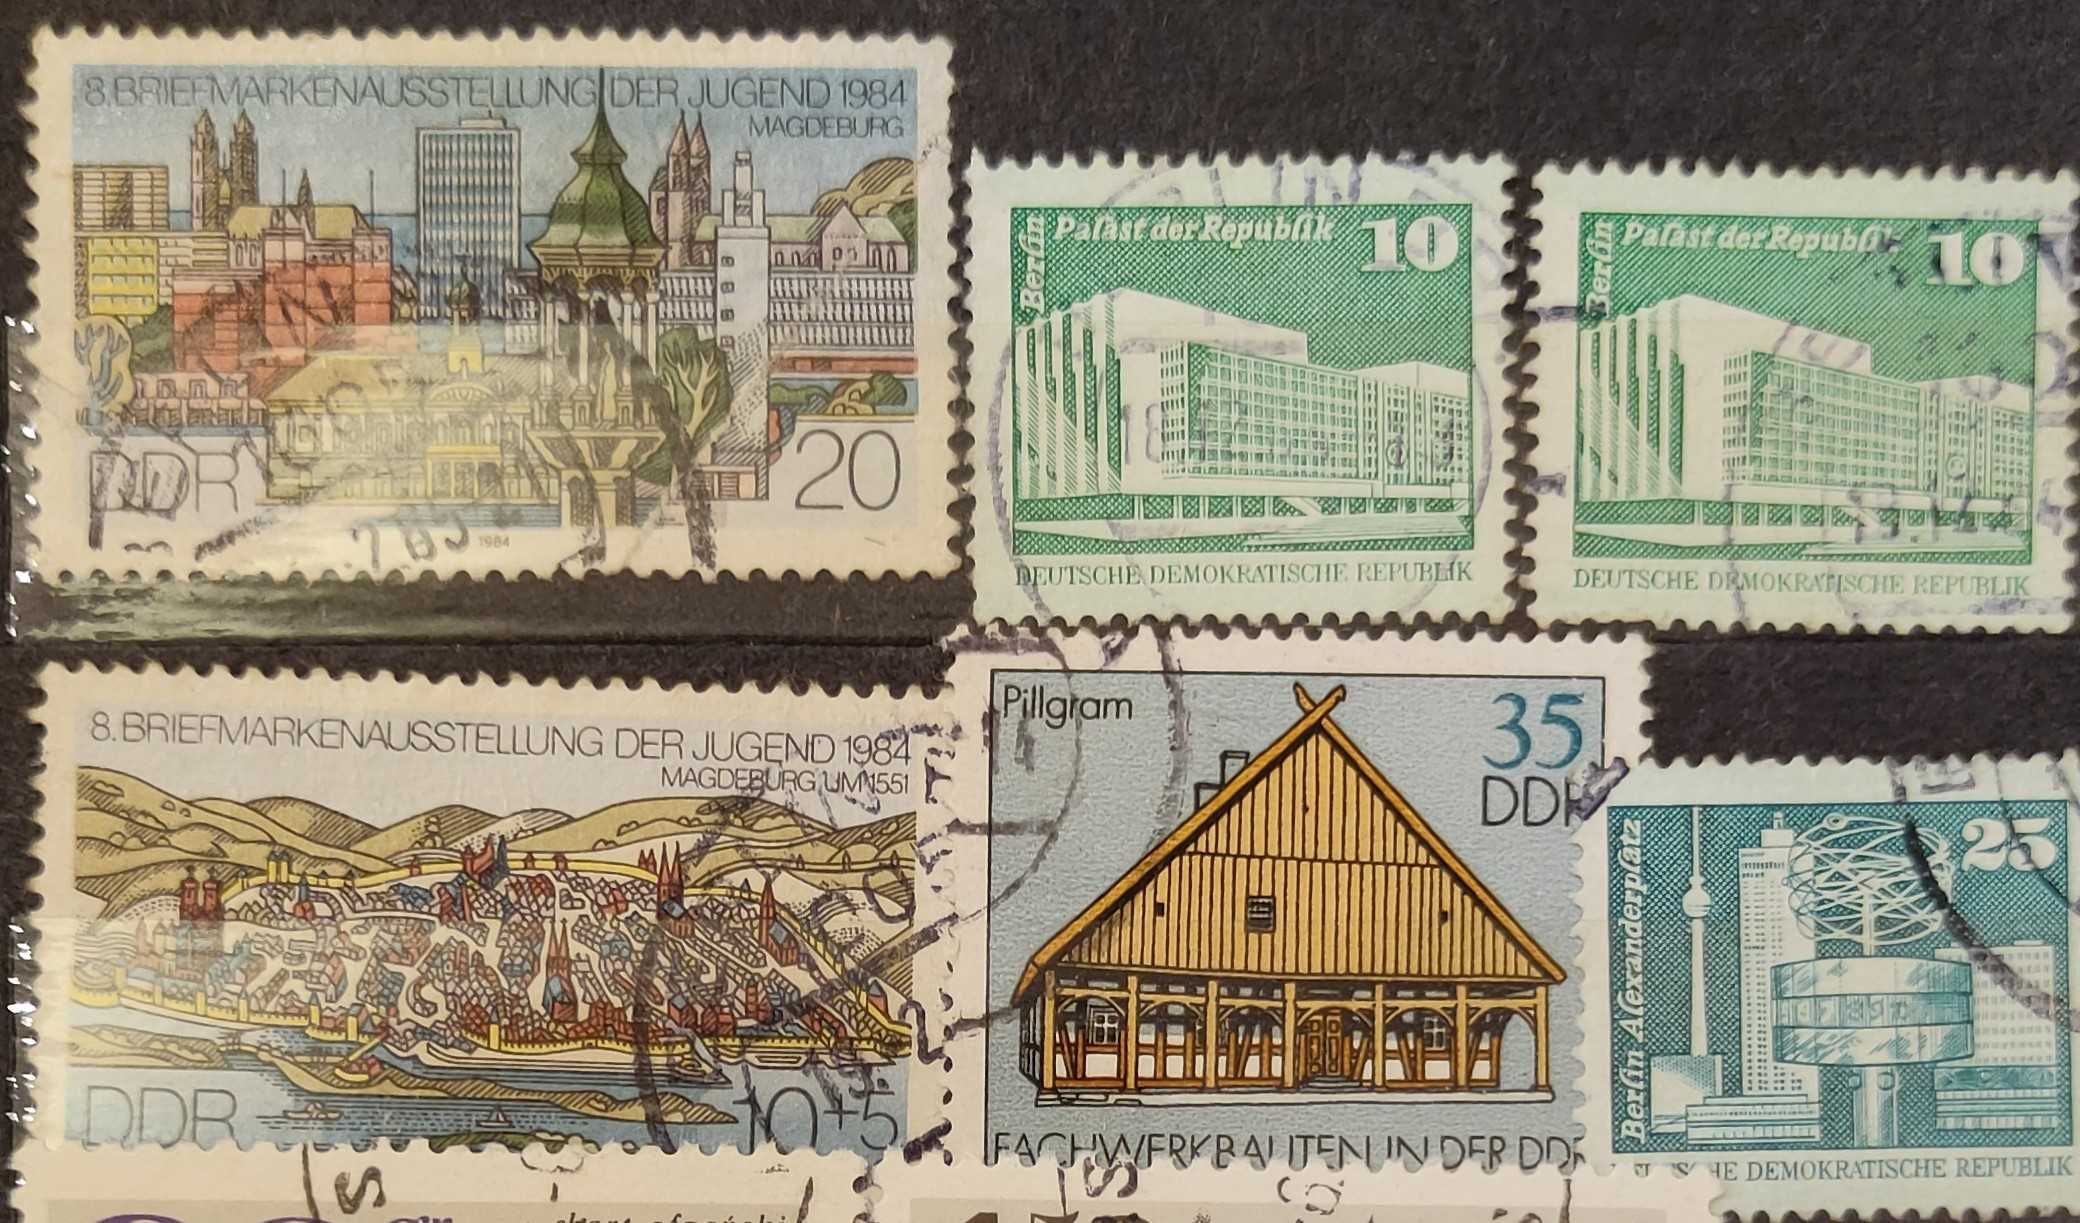 Znaczki pocztowe, znaczek pocztowy niemiecki (6 sztuk), lata 80